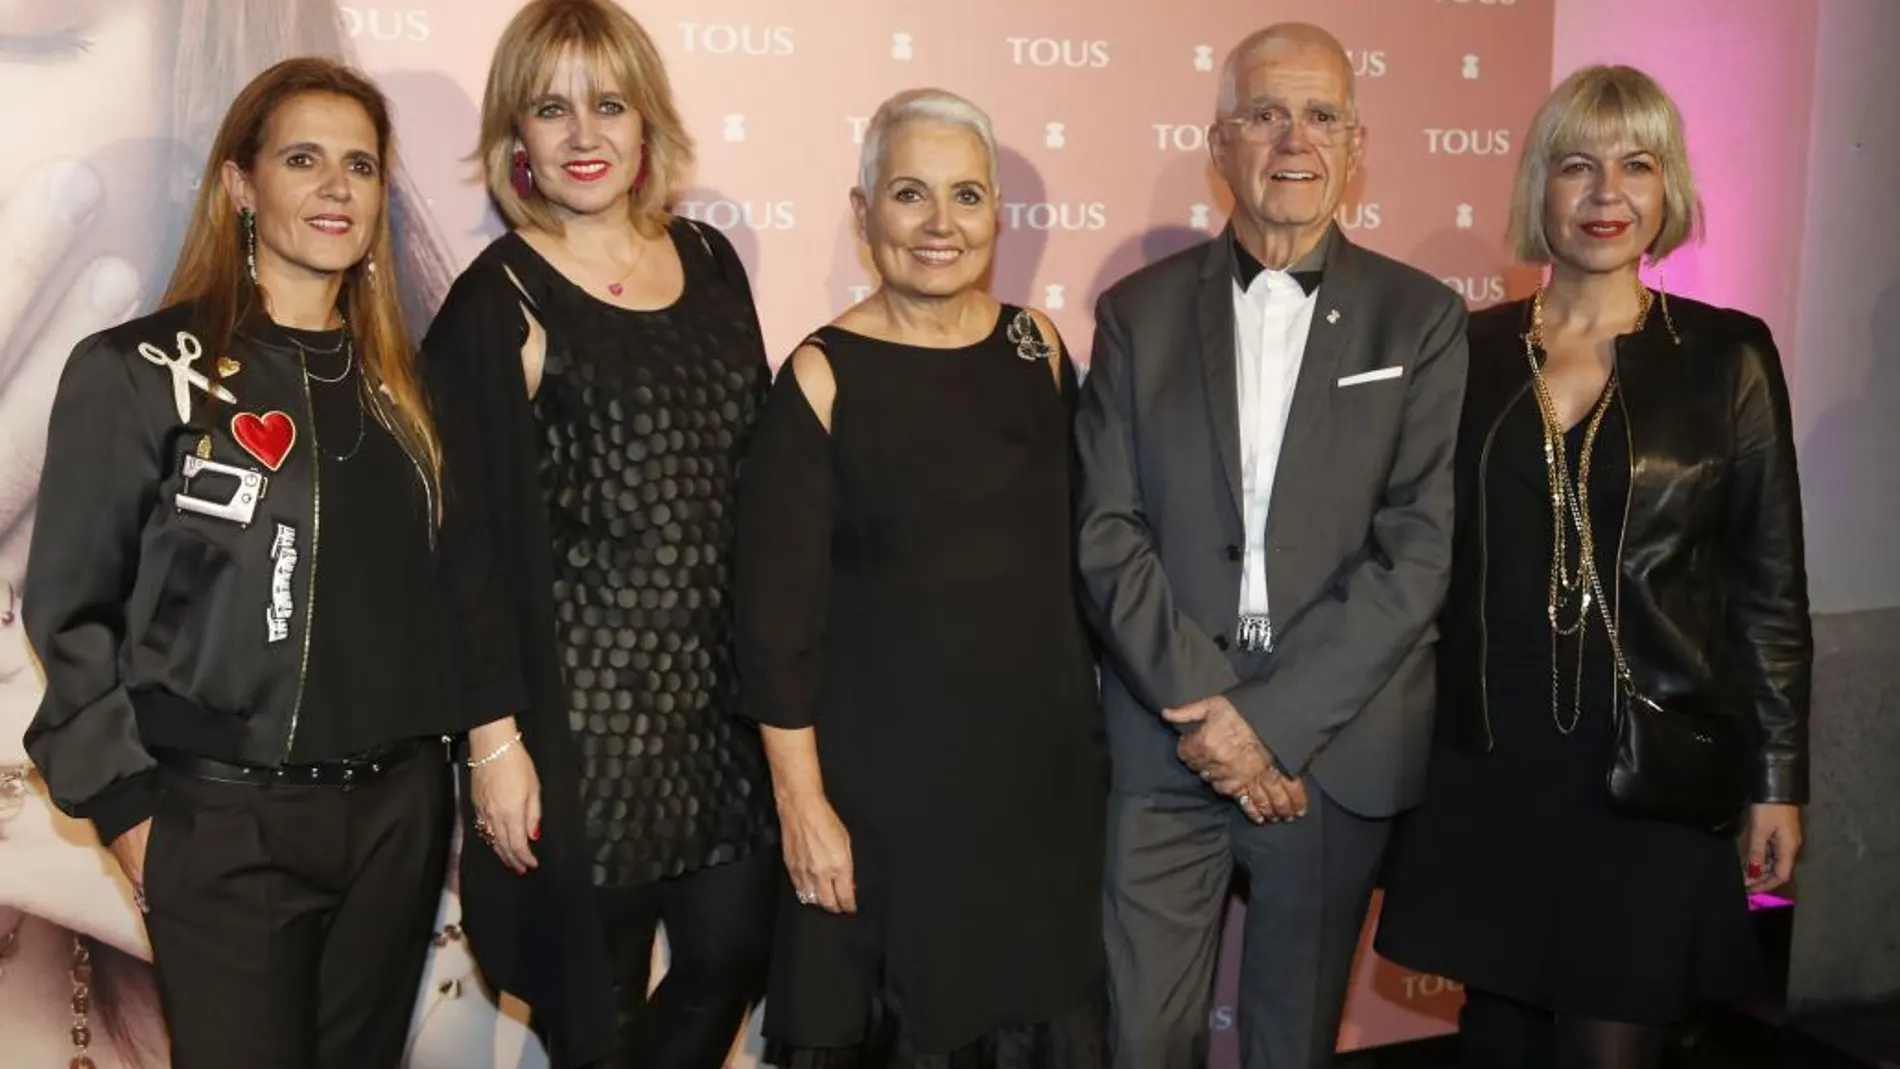 Rosa Oriol y Salvador Tous con sus hijas Alba, Laura y Rosa Tous en un evento en Madrid.